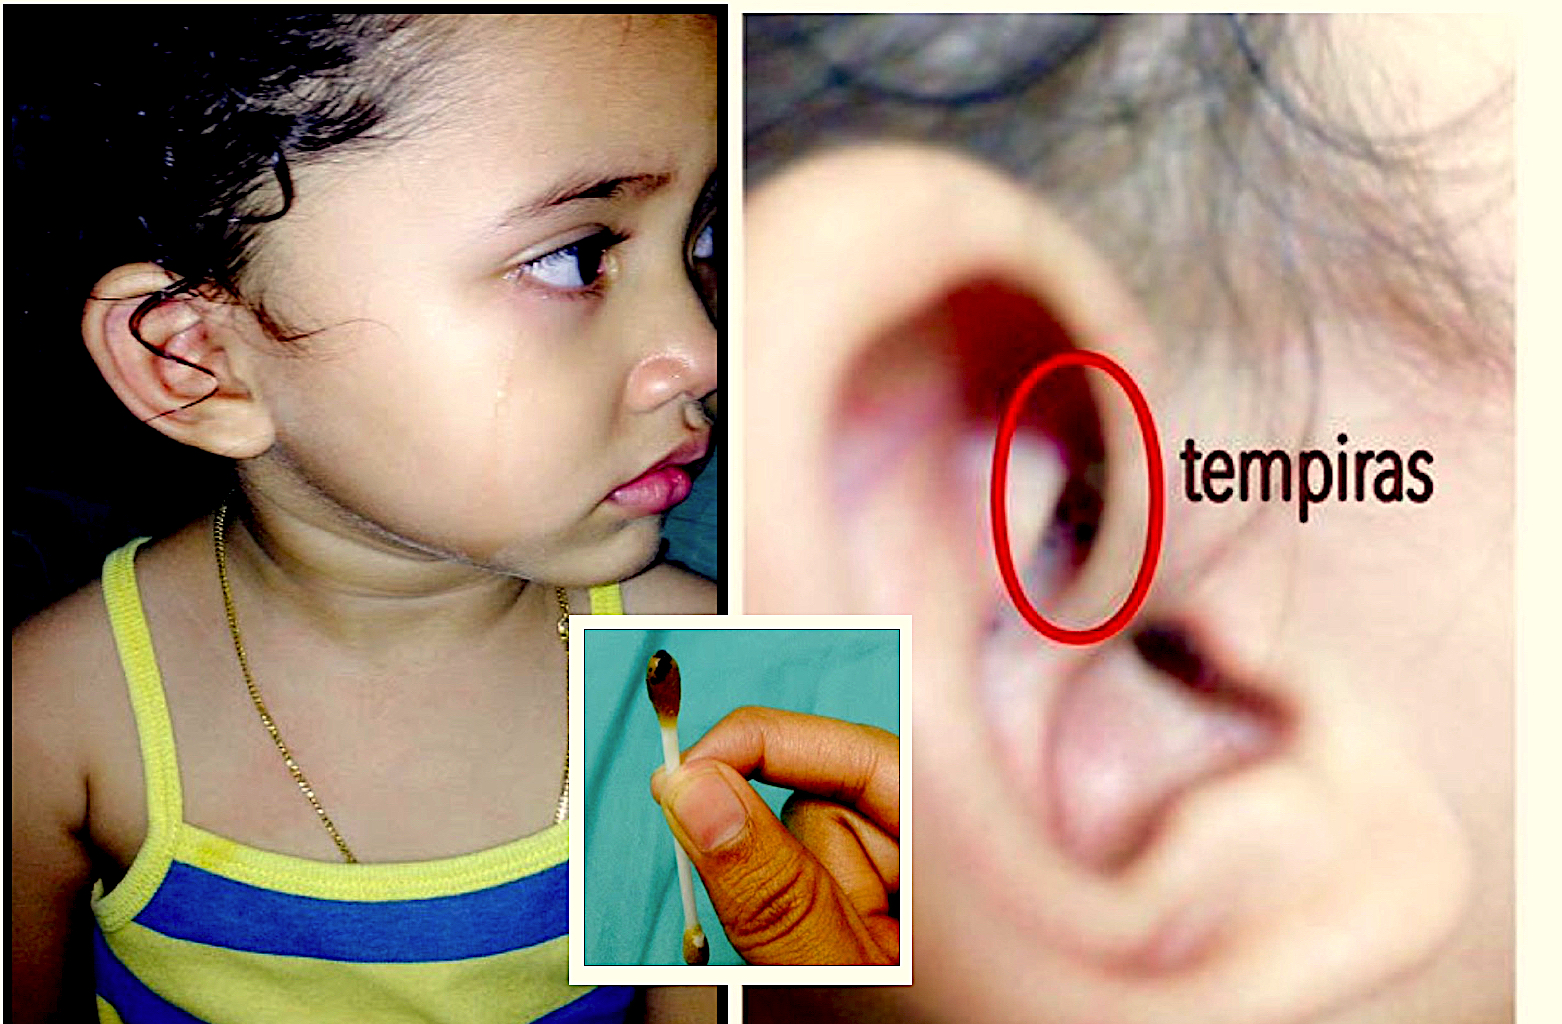 sajagempak.com - Anak Mengadu Sakit Di Telinga, Ibu Terkejut Jumpa Sarang Tempiras Dalam Telinga Anak, Sampai Sudah Bertelur